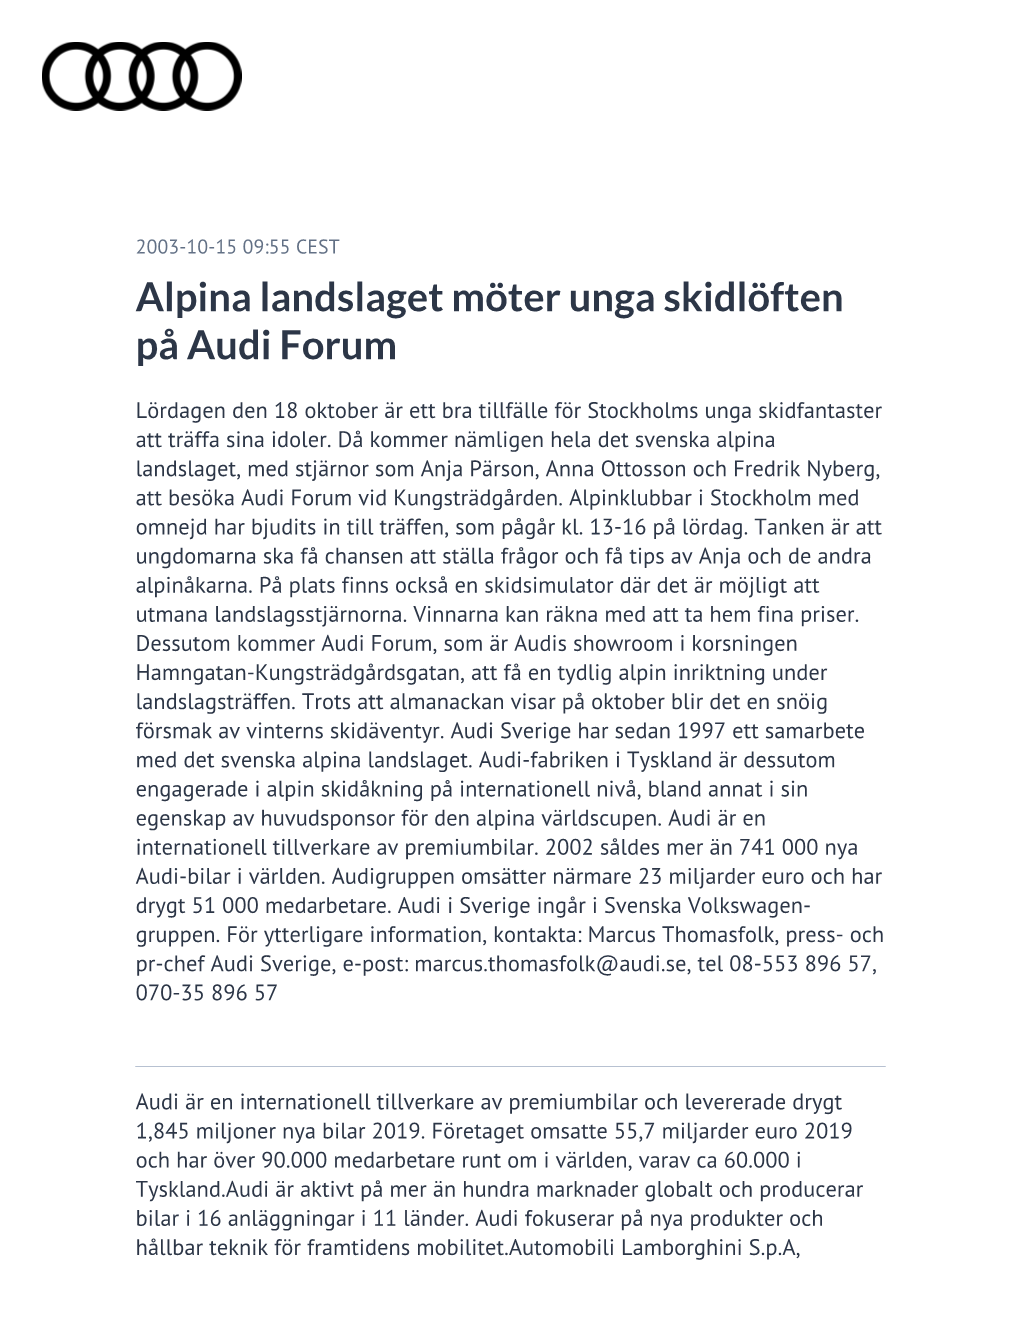 Alpina Landslaget Möter Unga Skidlöften På Audi Forum